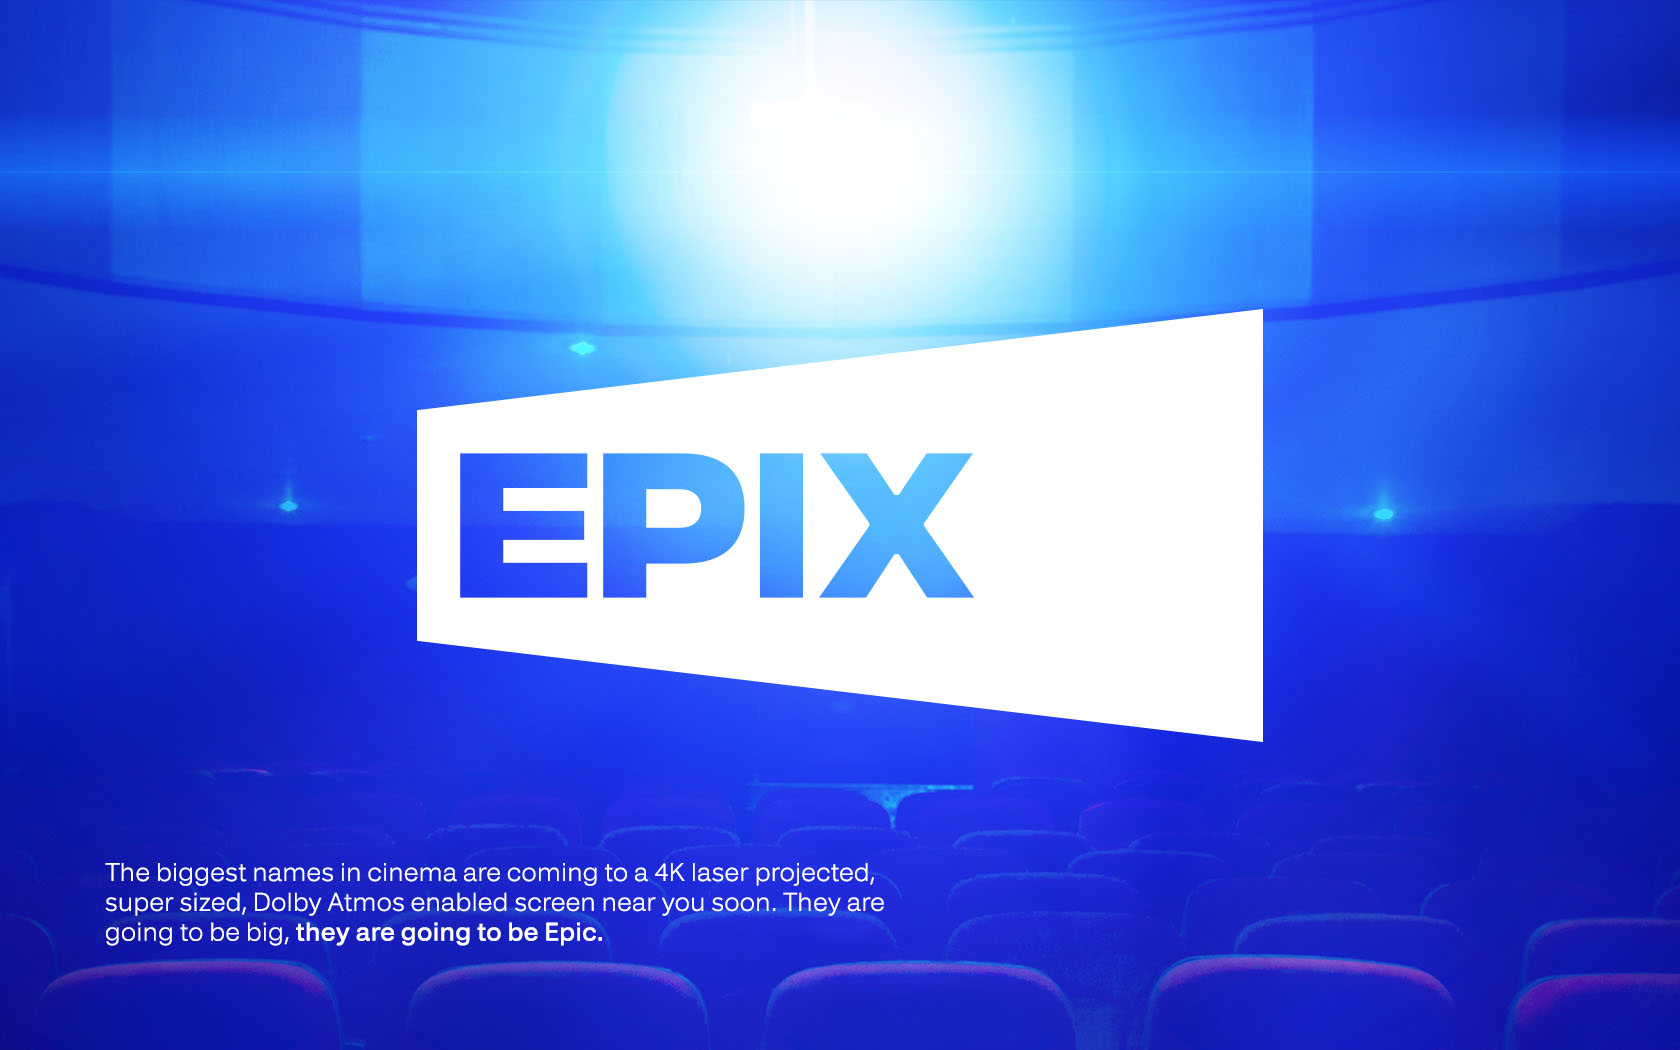 Epix logo in white